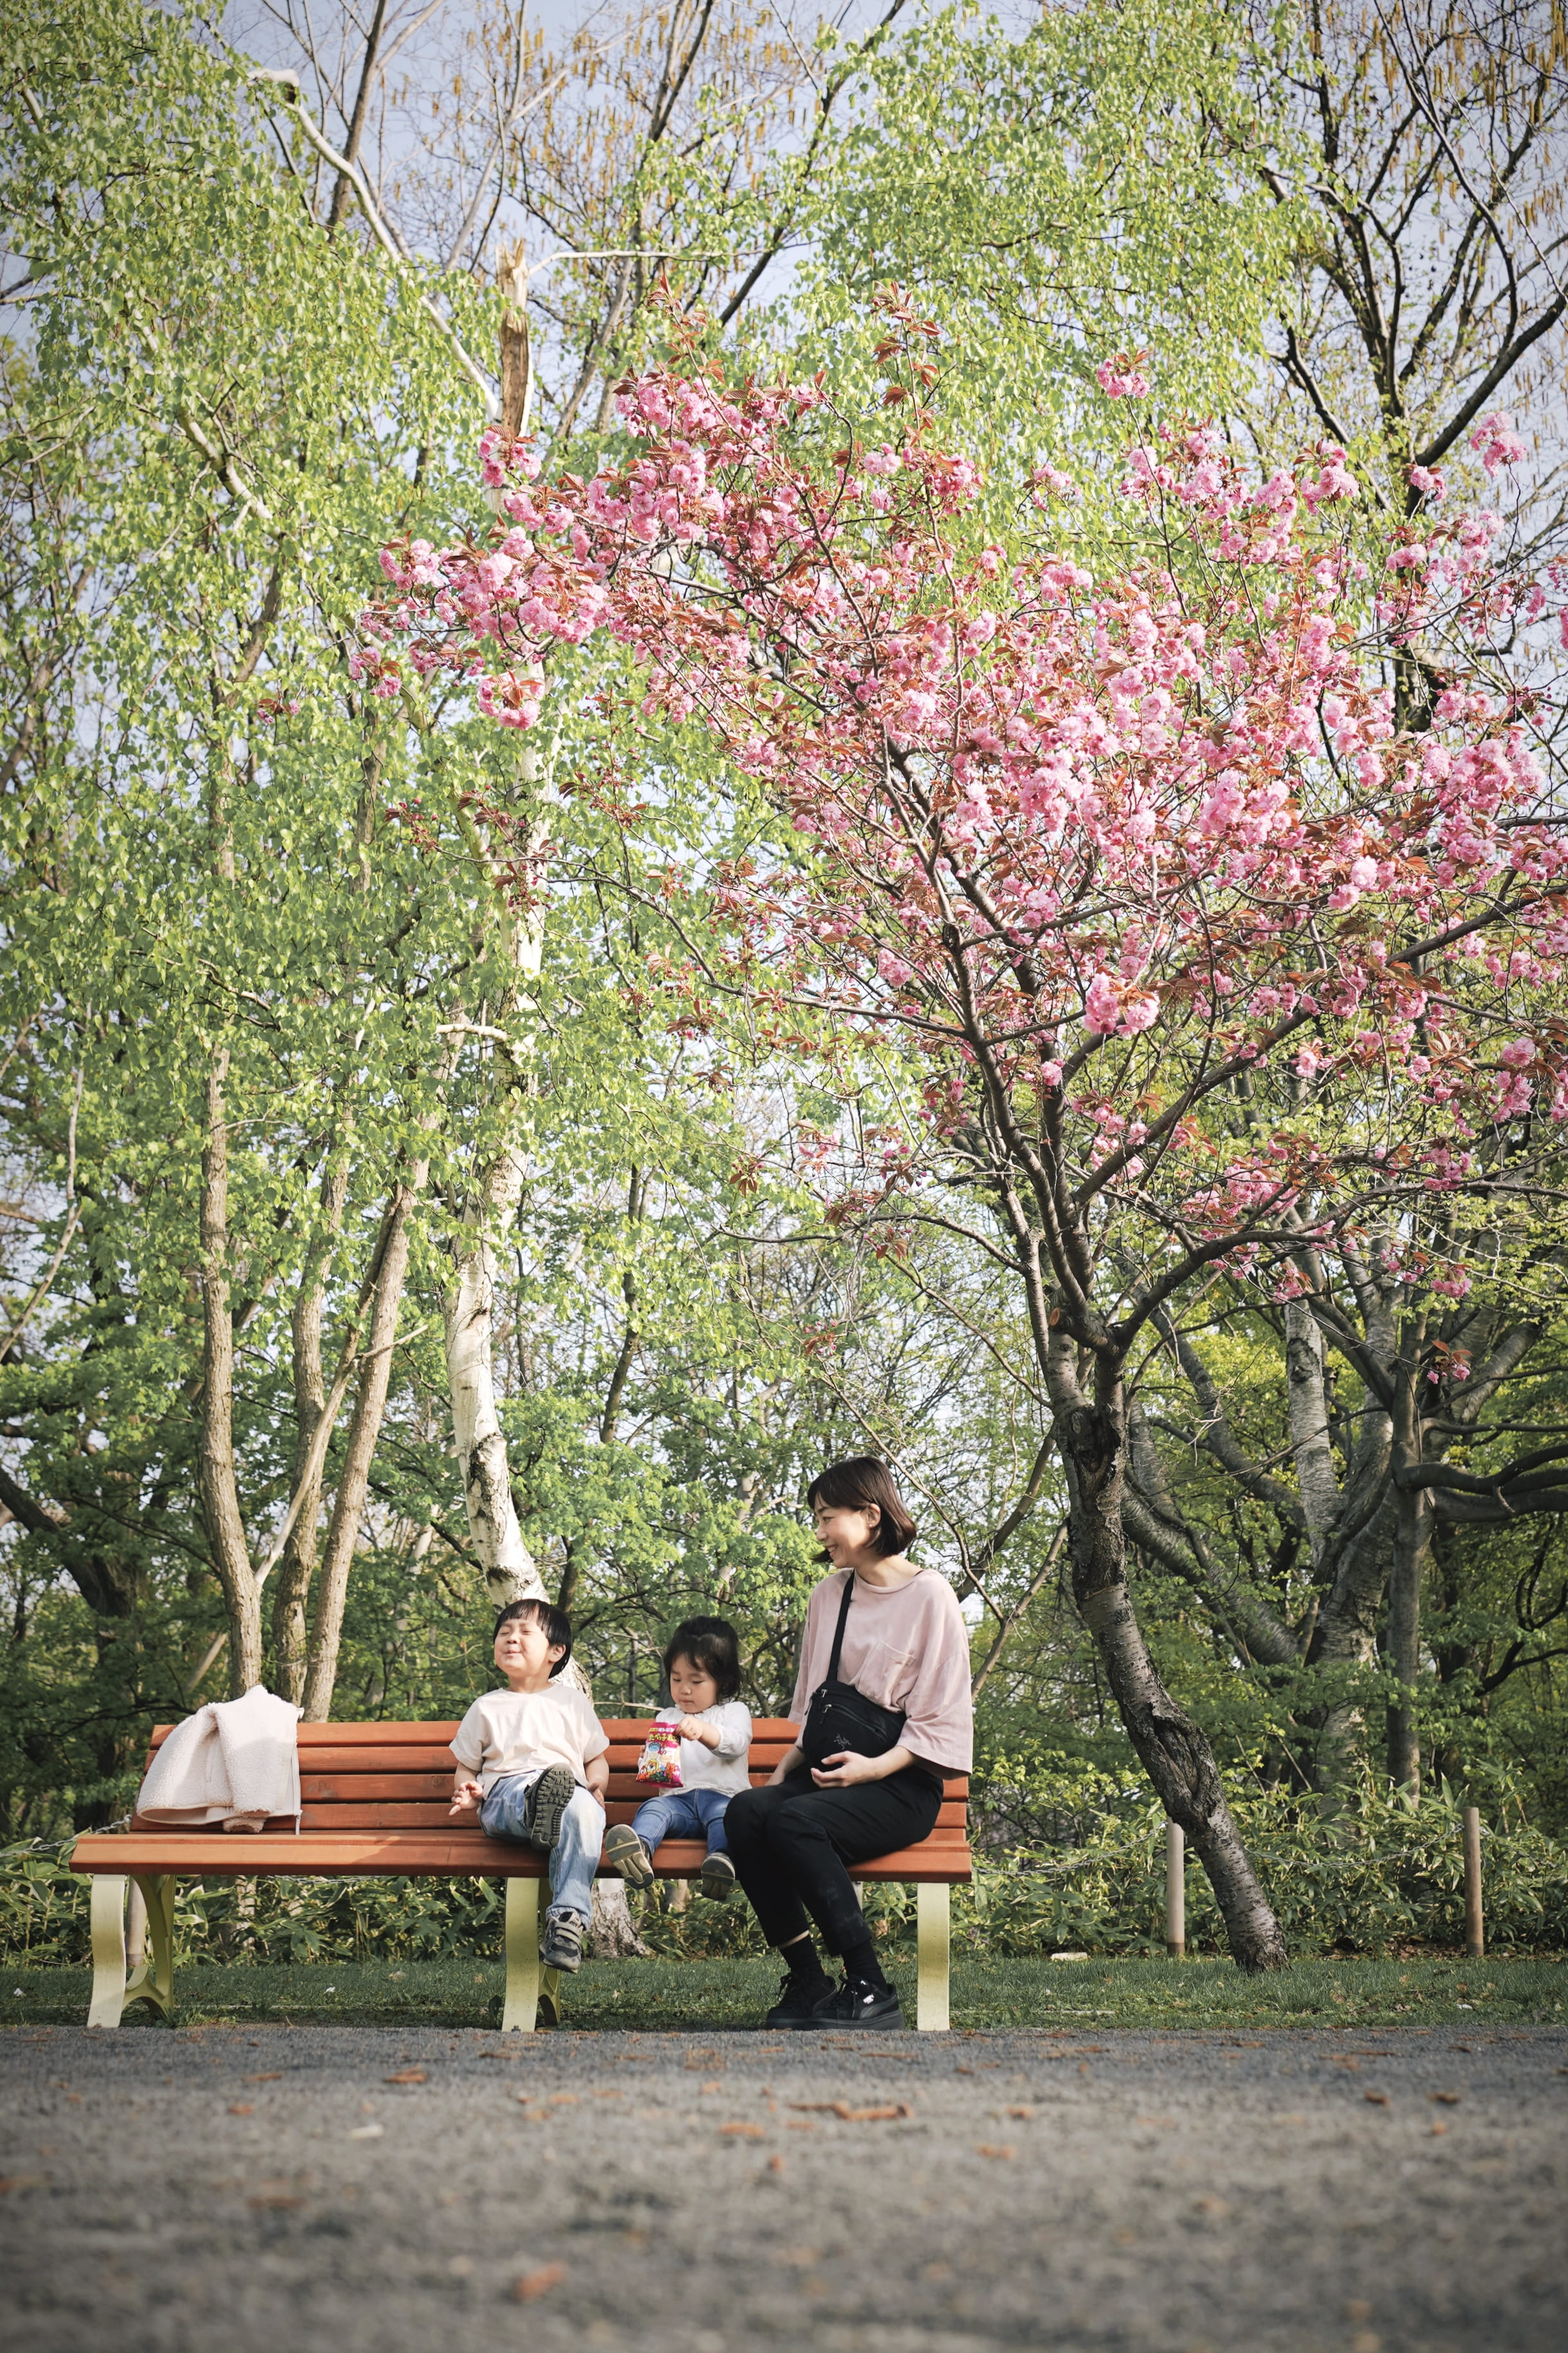 桜の木下で母親と子供が座っている写真